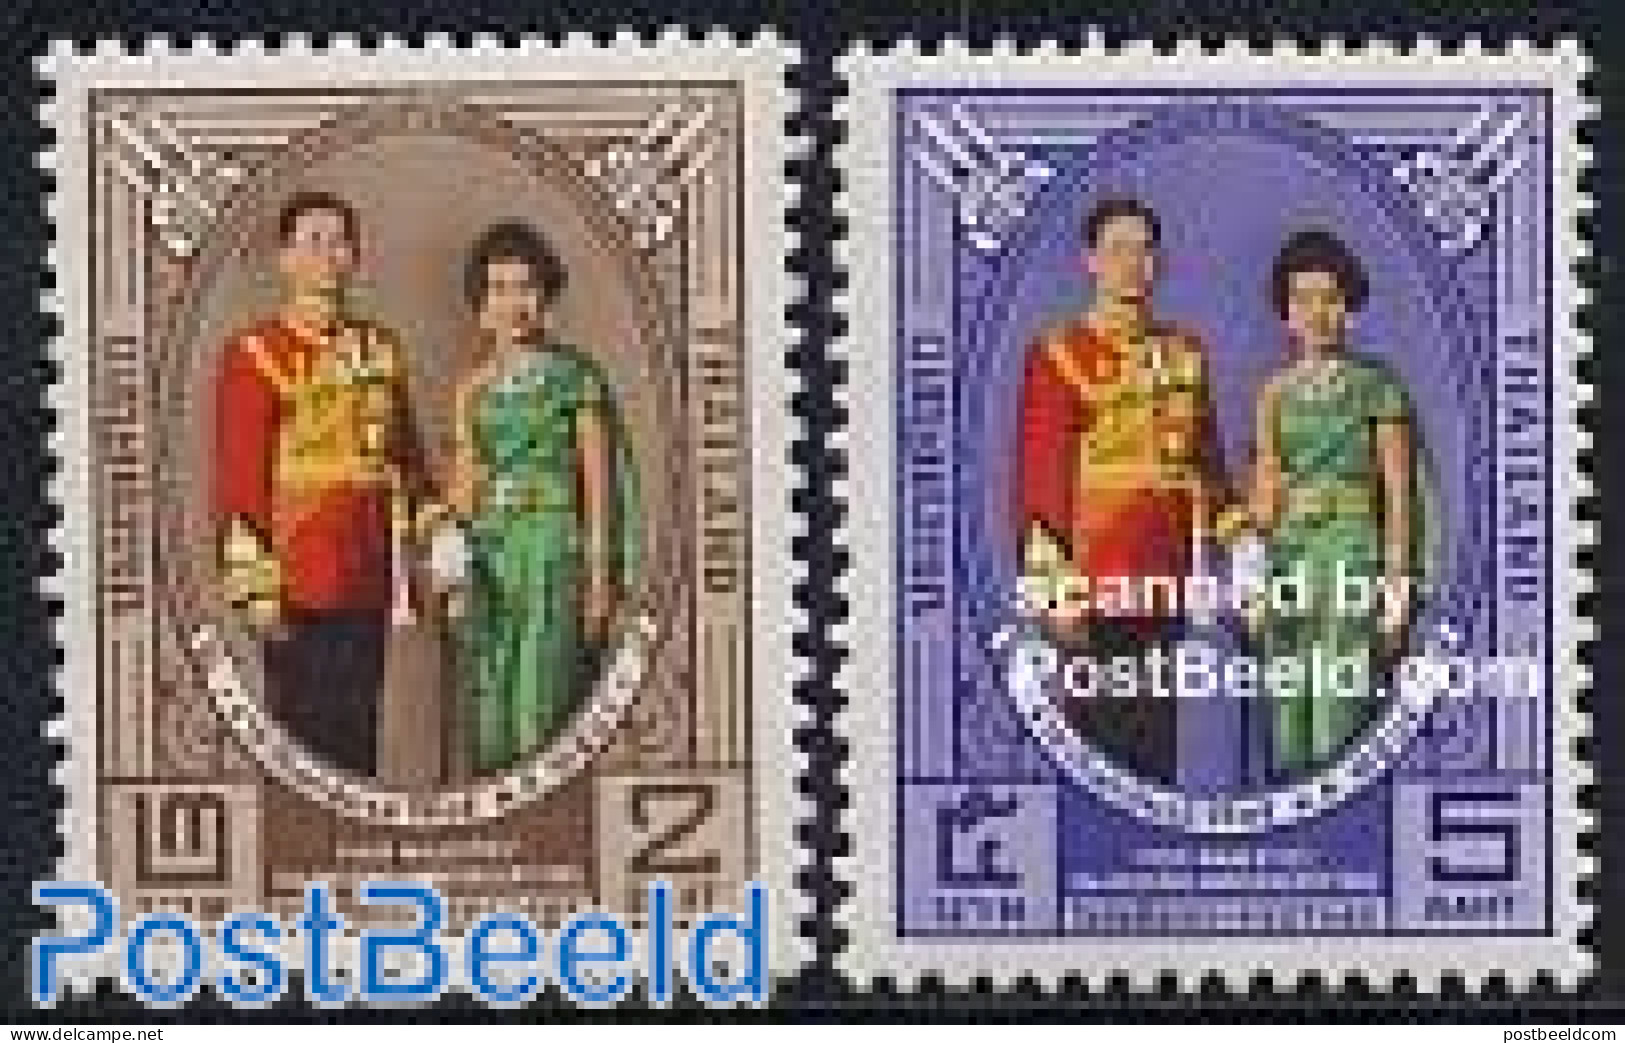 Thailand 1965 Royal Wedding Anniversary 2v, Mint NH, History - Kings & Queens (Royalty) - Royalties, Royals